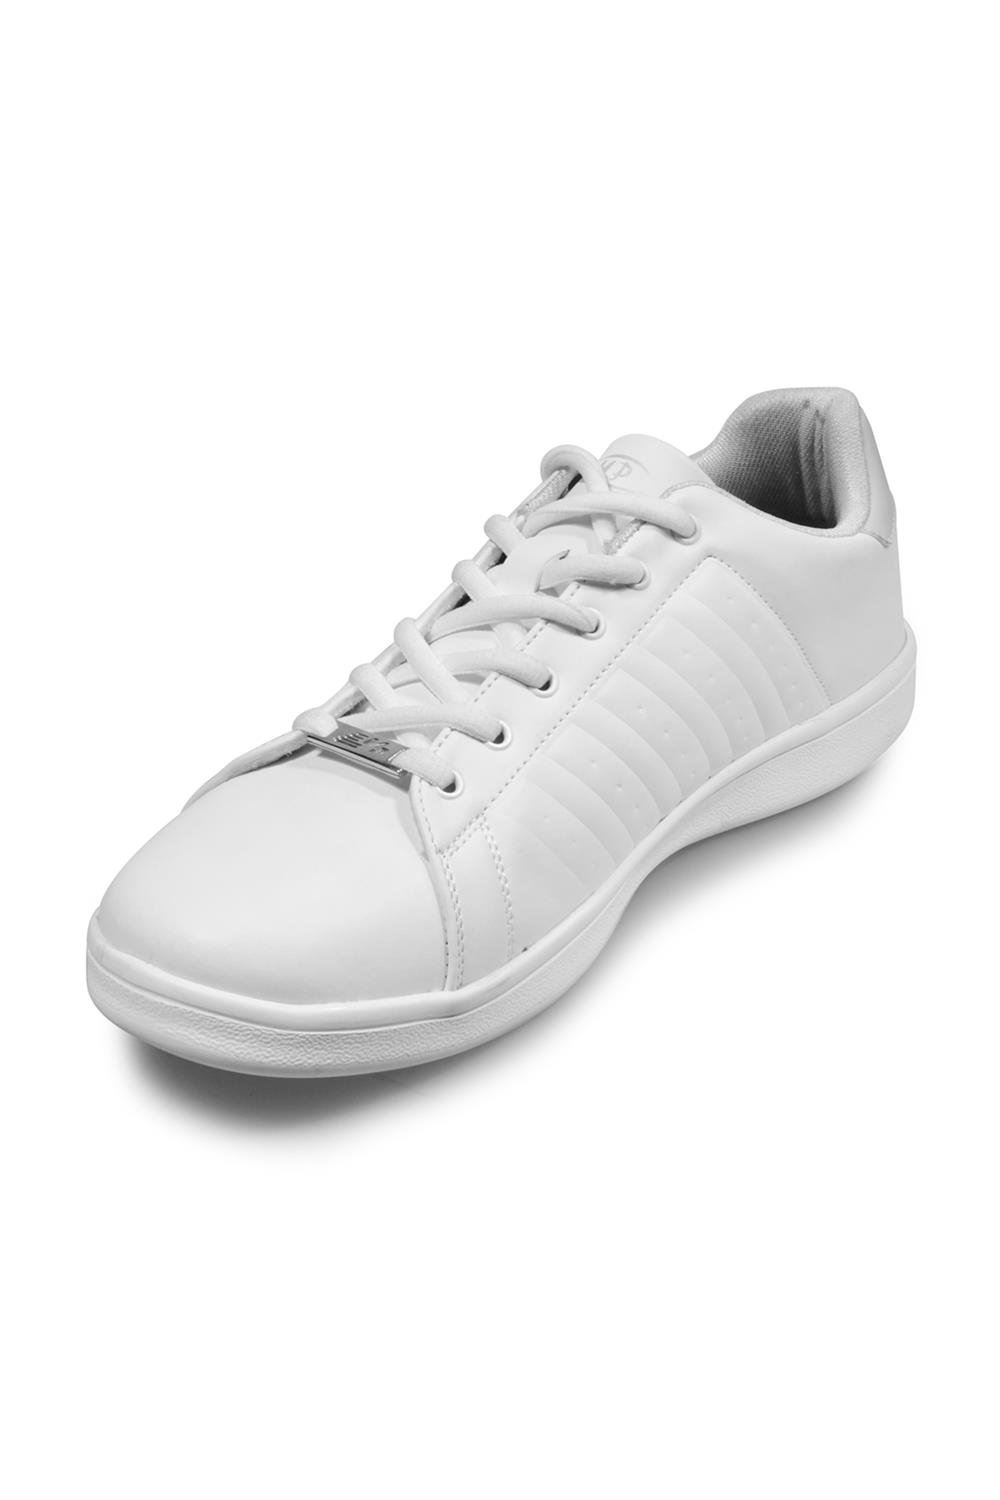 Unisex Beyaz Spor Ayakkabı Modelleri ve Fiyatları